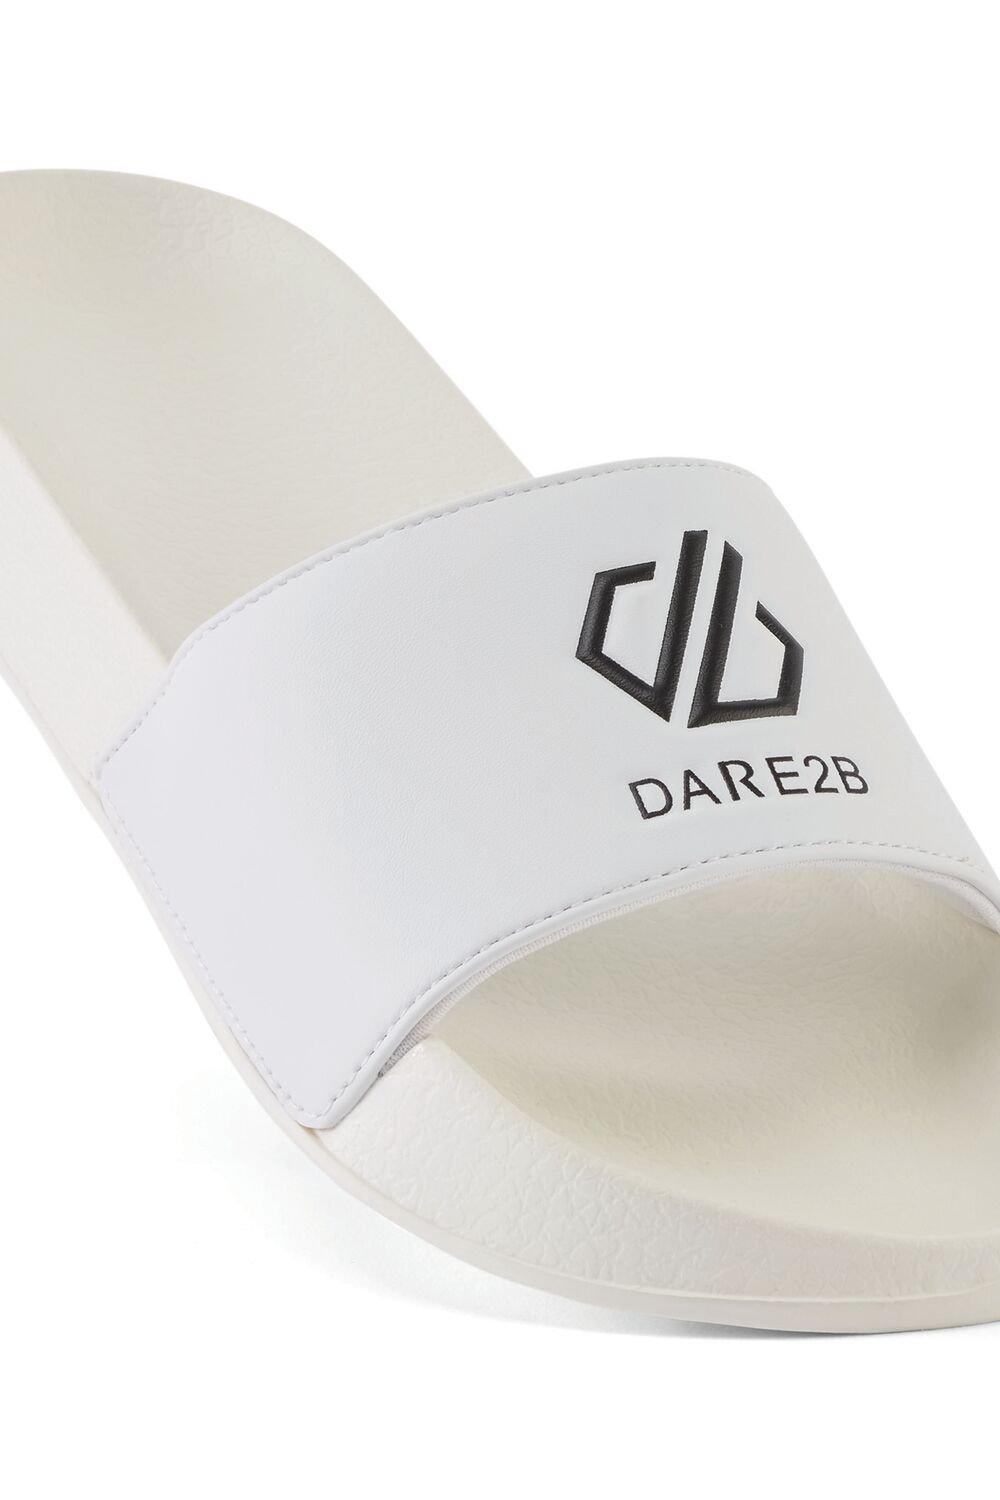 Легкие сандалии Arch с мягкой подкладкой Dare 2b, белый